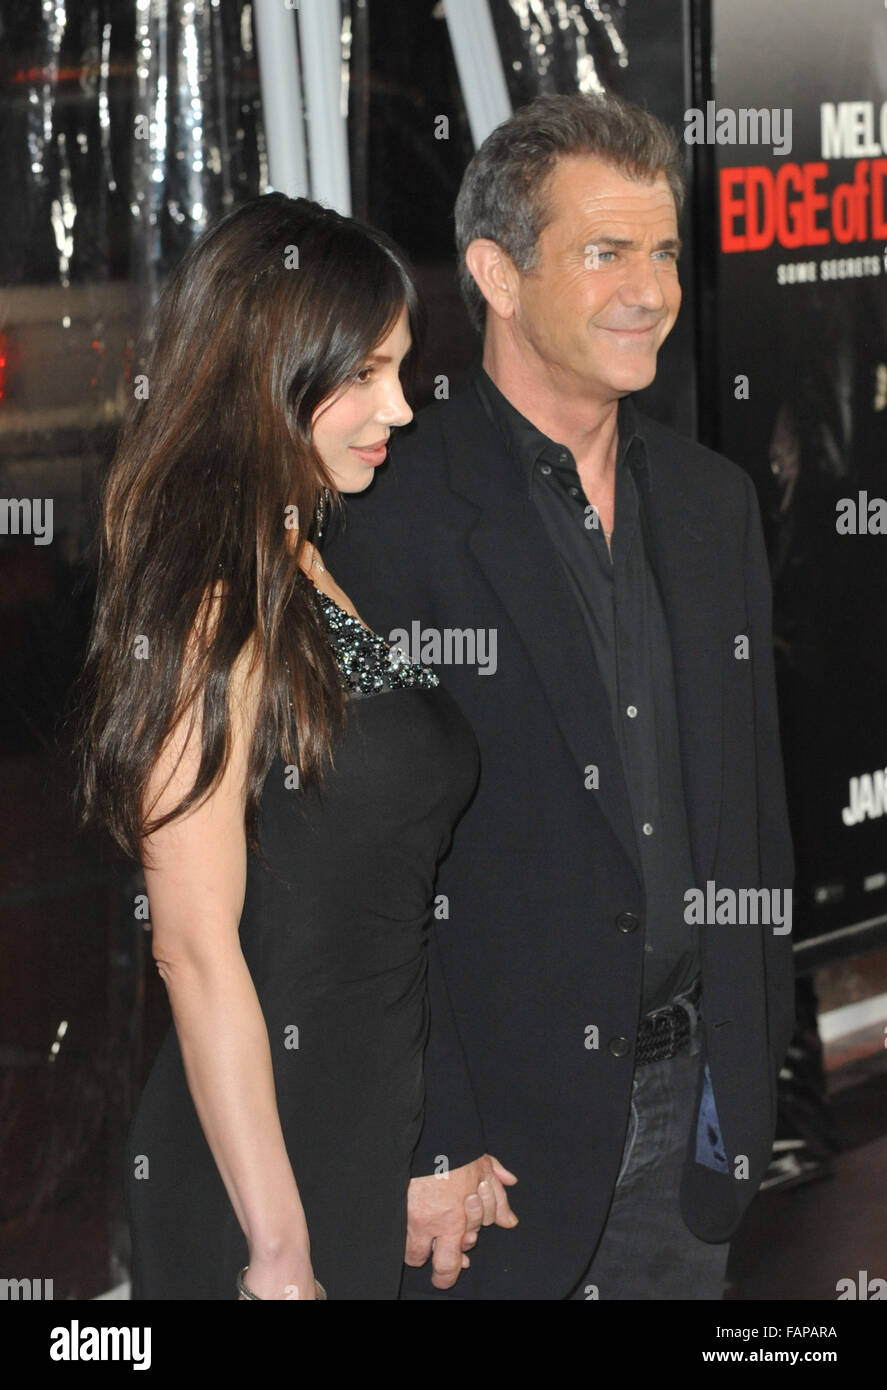 LOS ANGELES, CA - Gennaio 26, 2010: Mel Gibson & fidanzata Oksana Grigorieva presso il Los Angeles premiere del suo nuovo film 'Edge of Darkness' a Grauman's Chinese Theater di Hollywood. Foto Stock